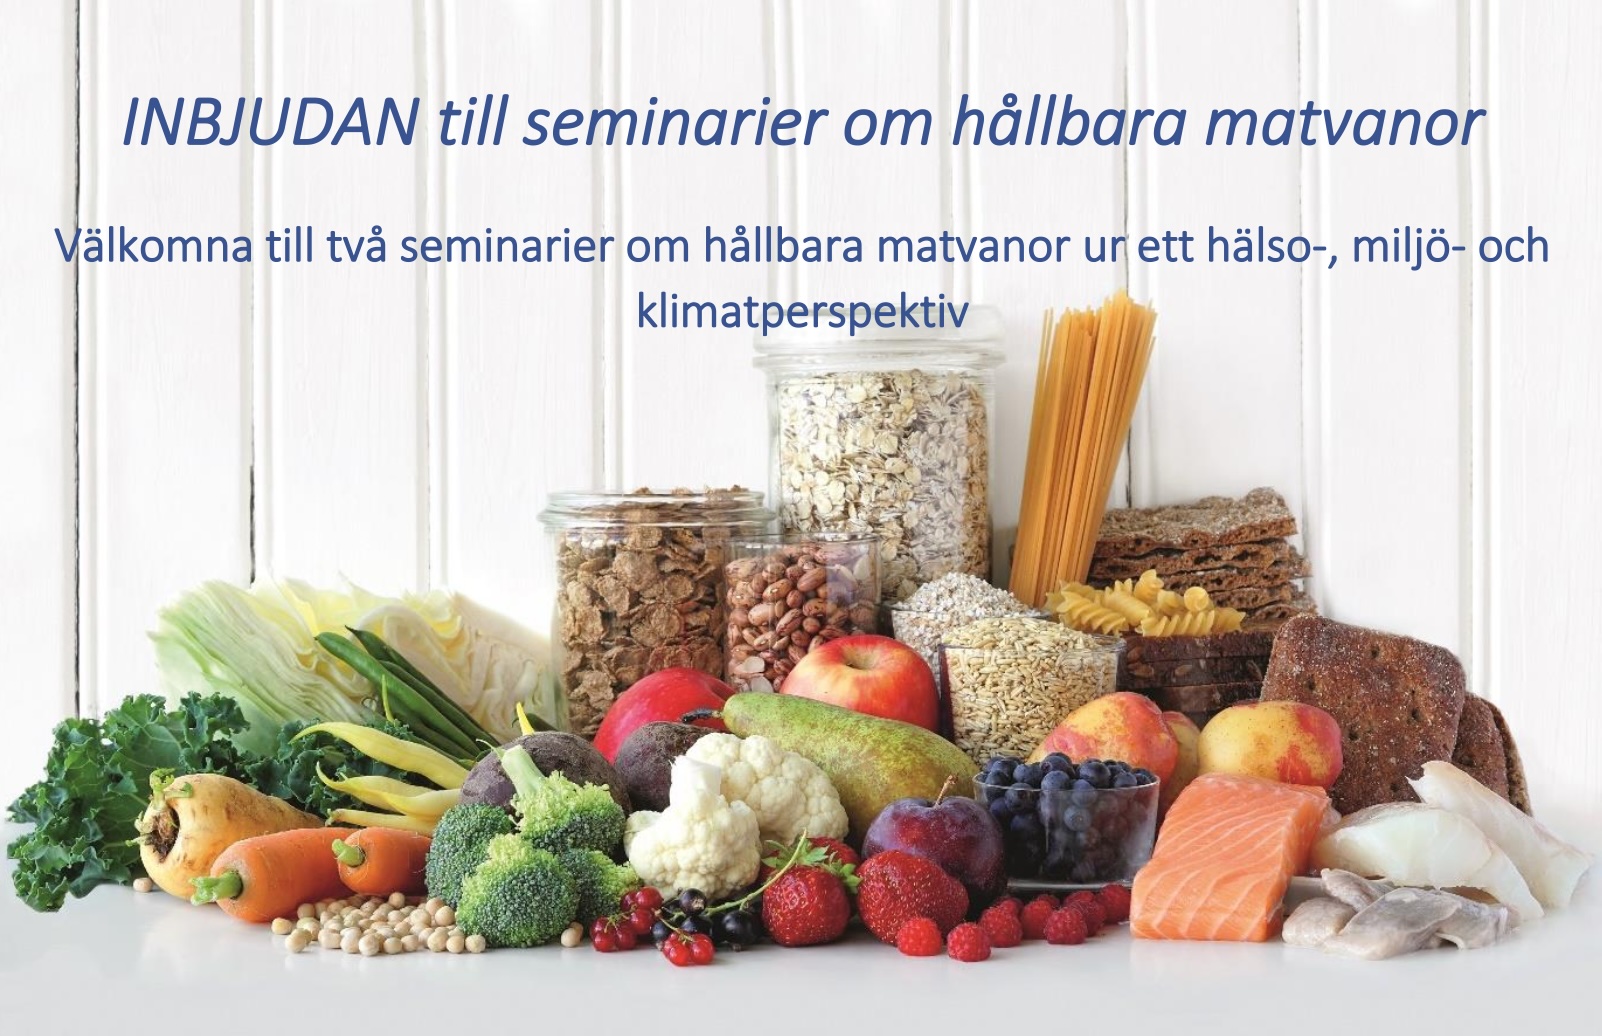 Inbjudan till seminarier om hållbara matvanor